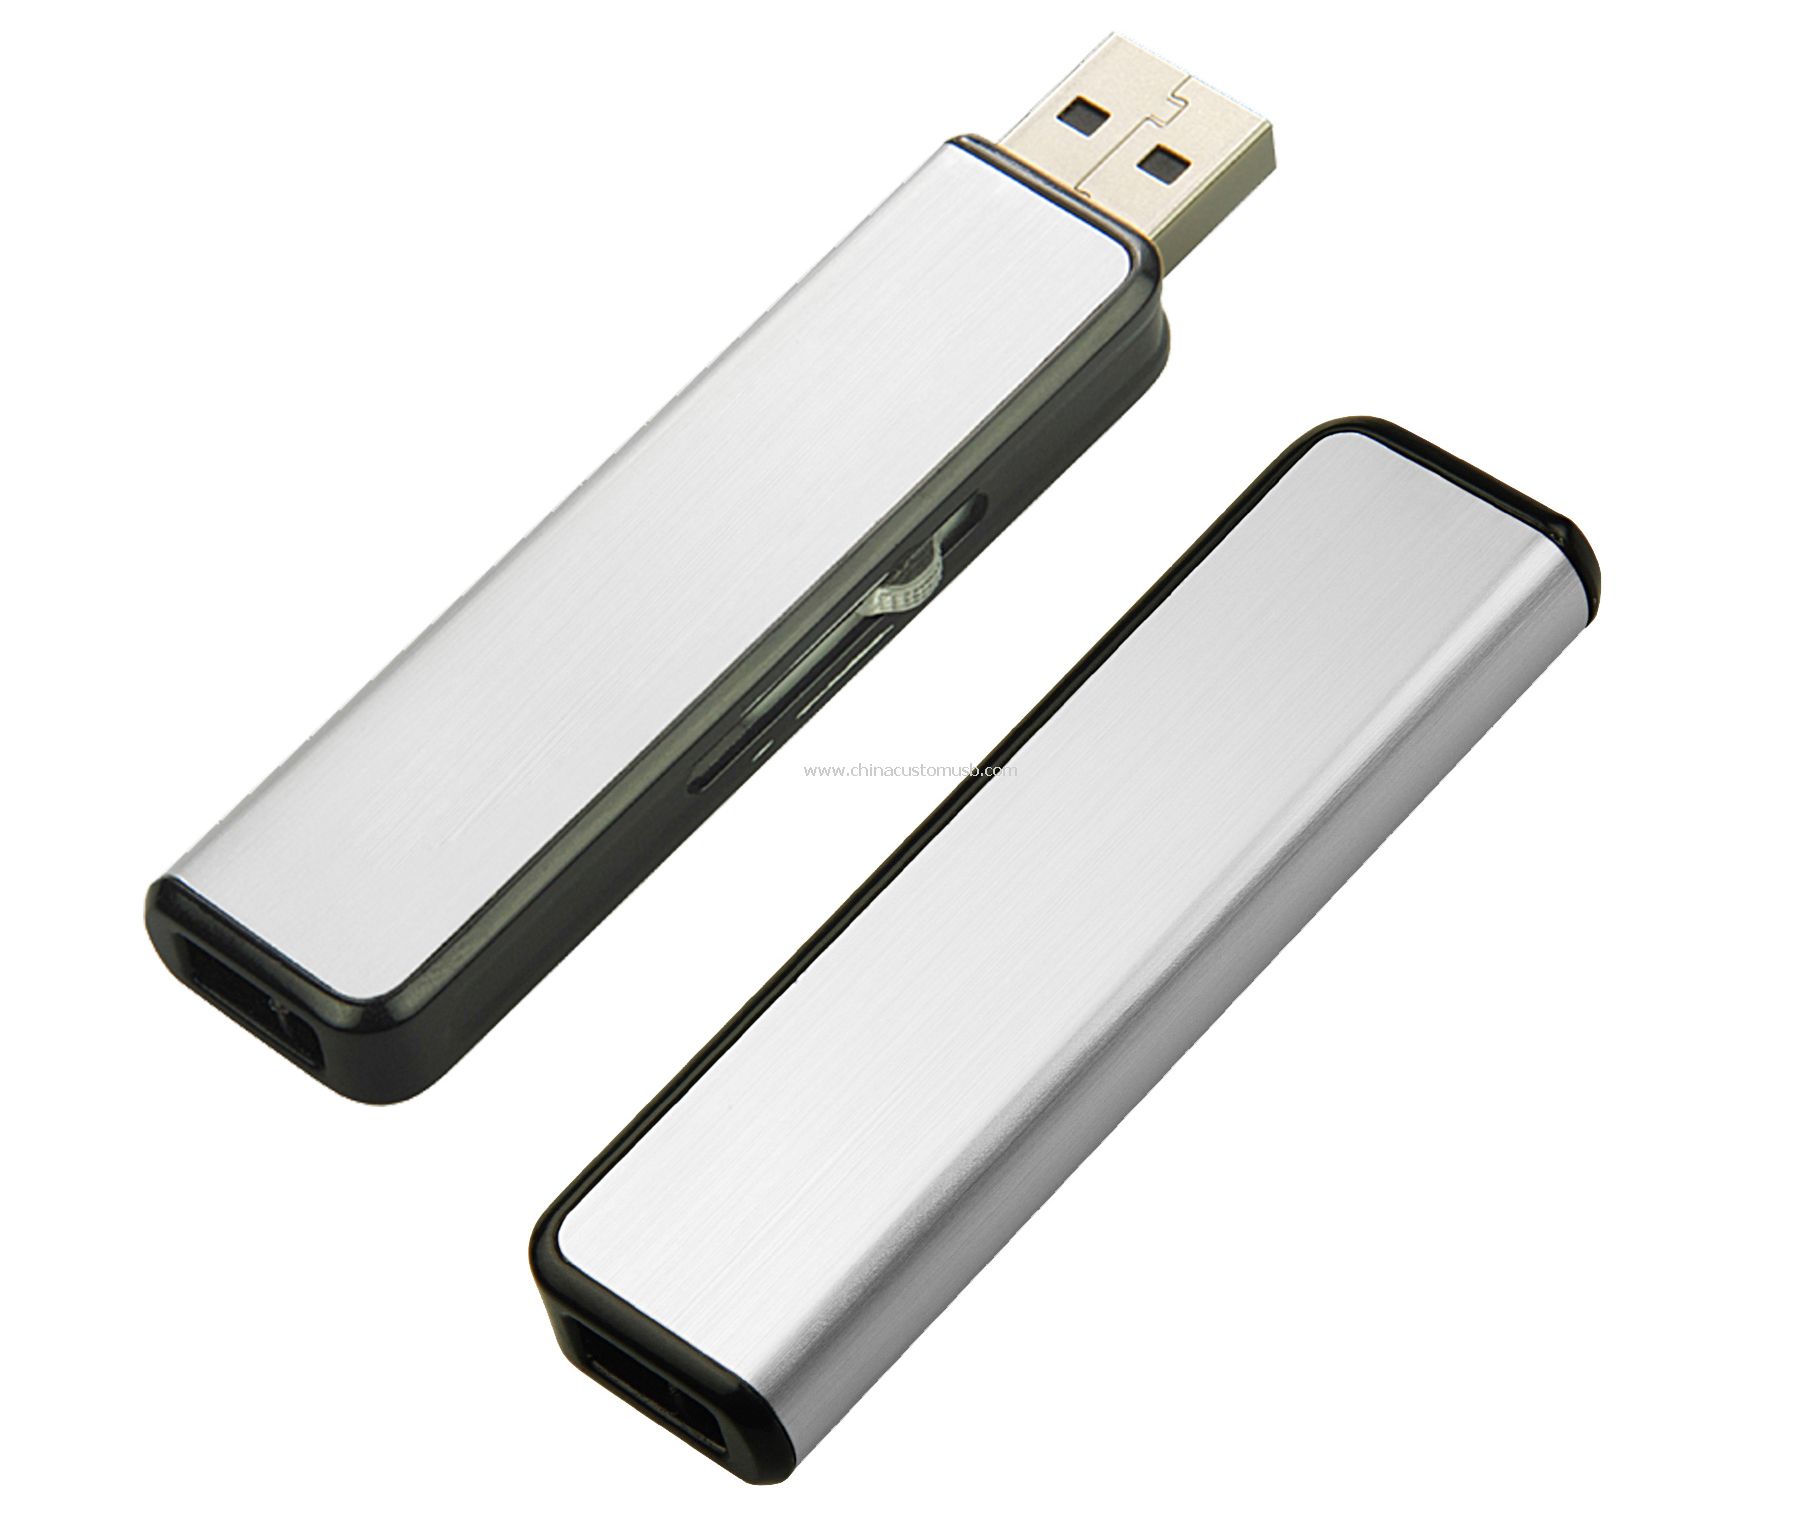 Pousser-tirer USB avec couvercle en Aluminium